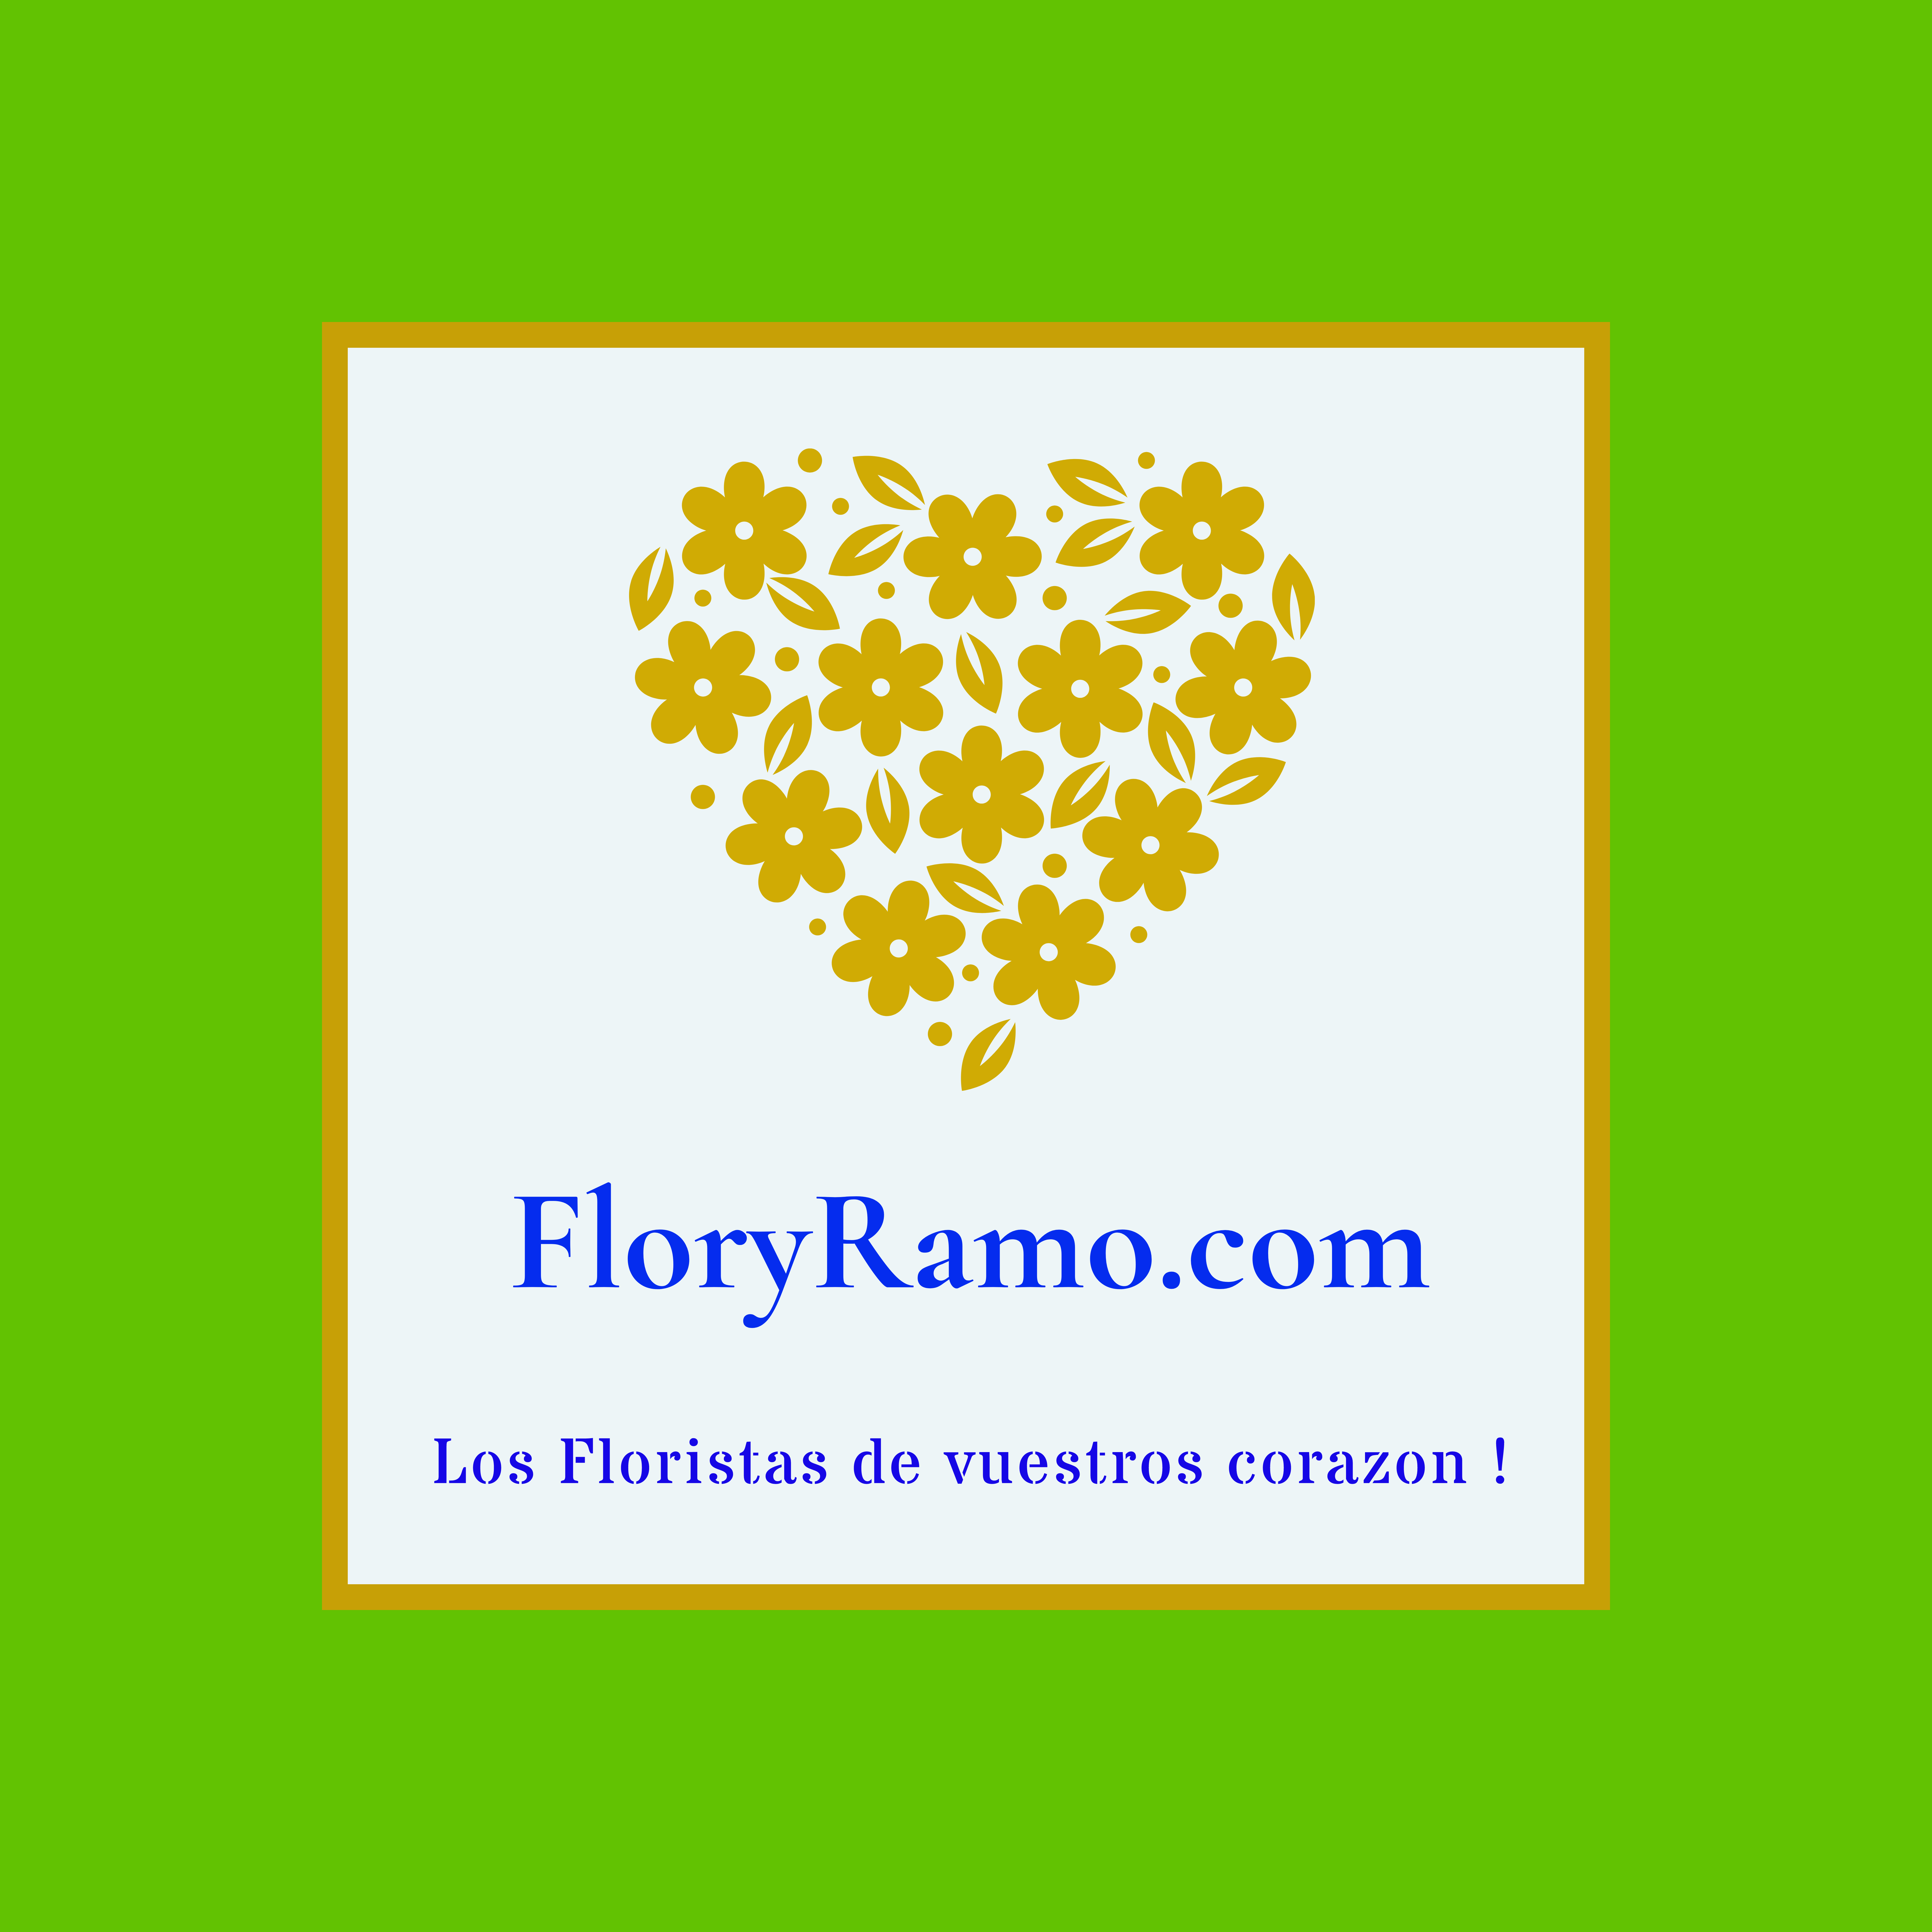 Floryramo.com Salobreña